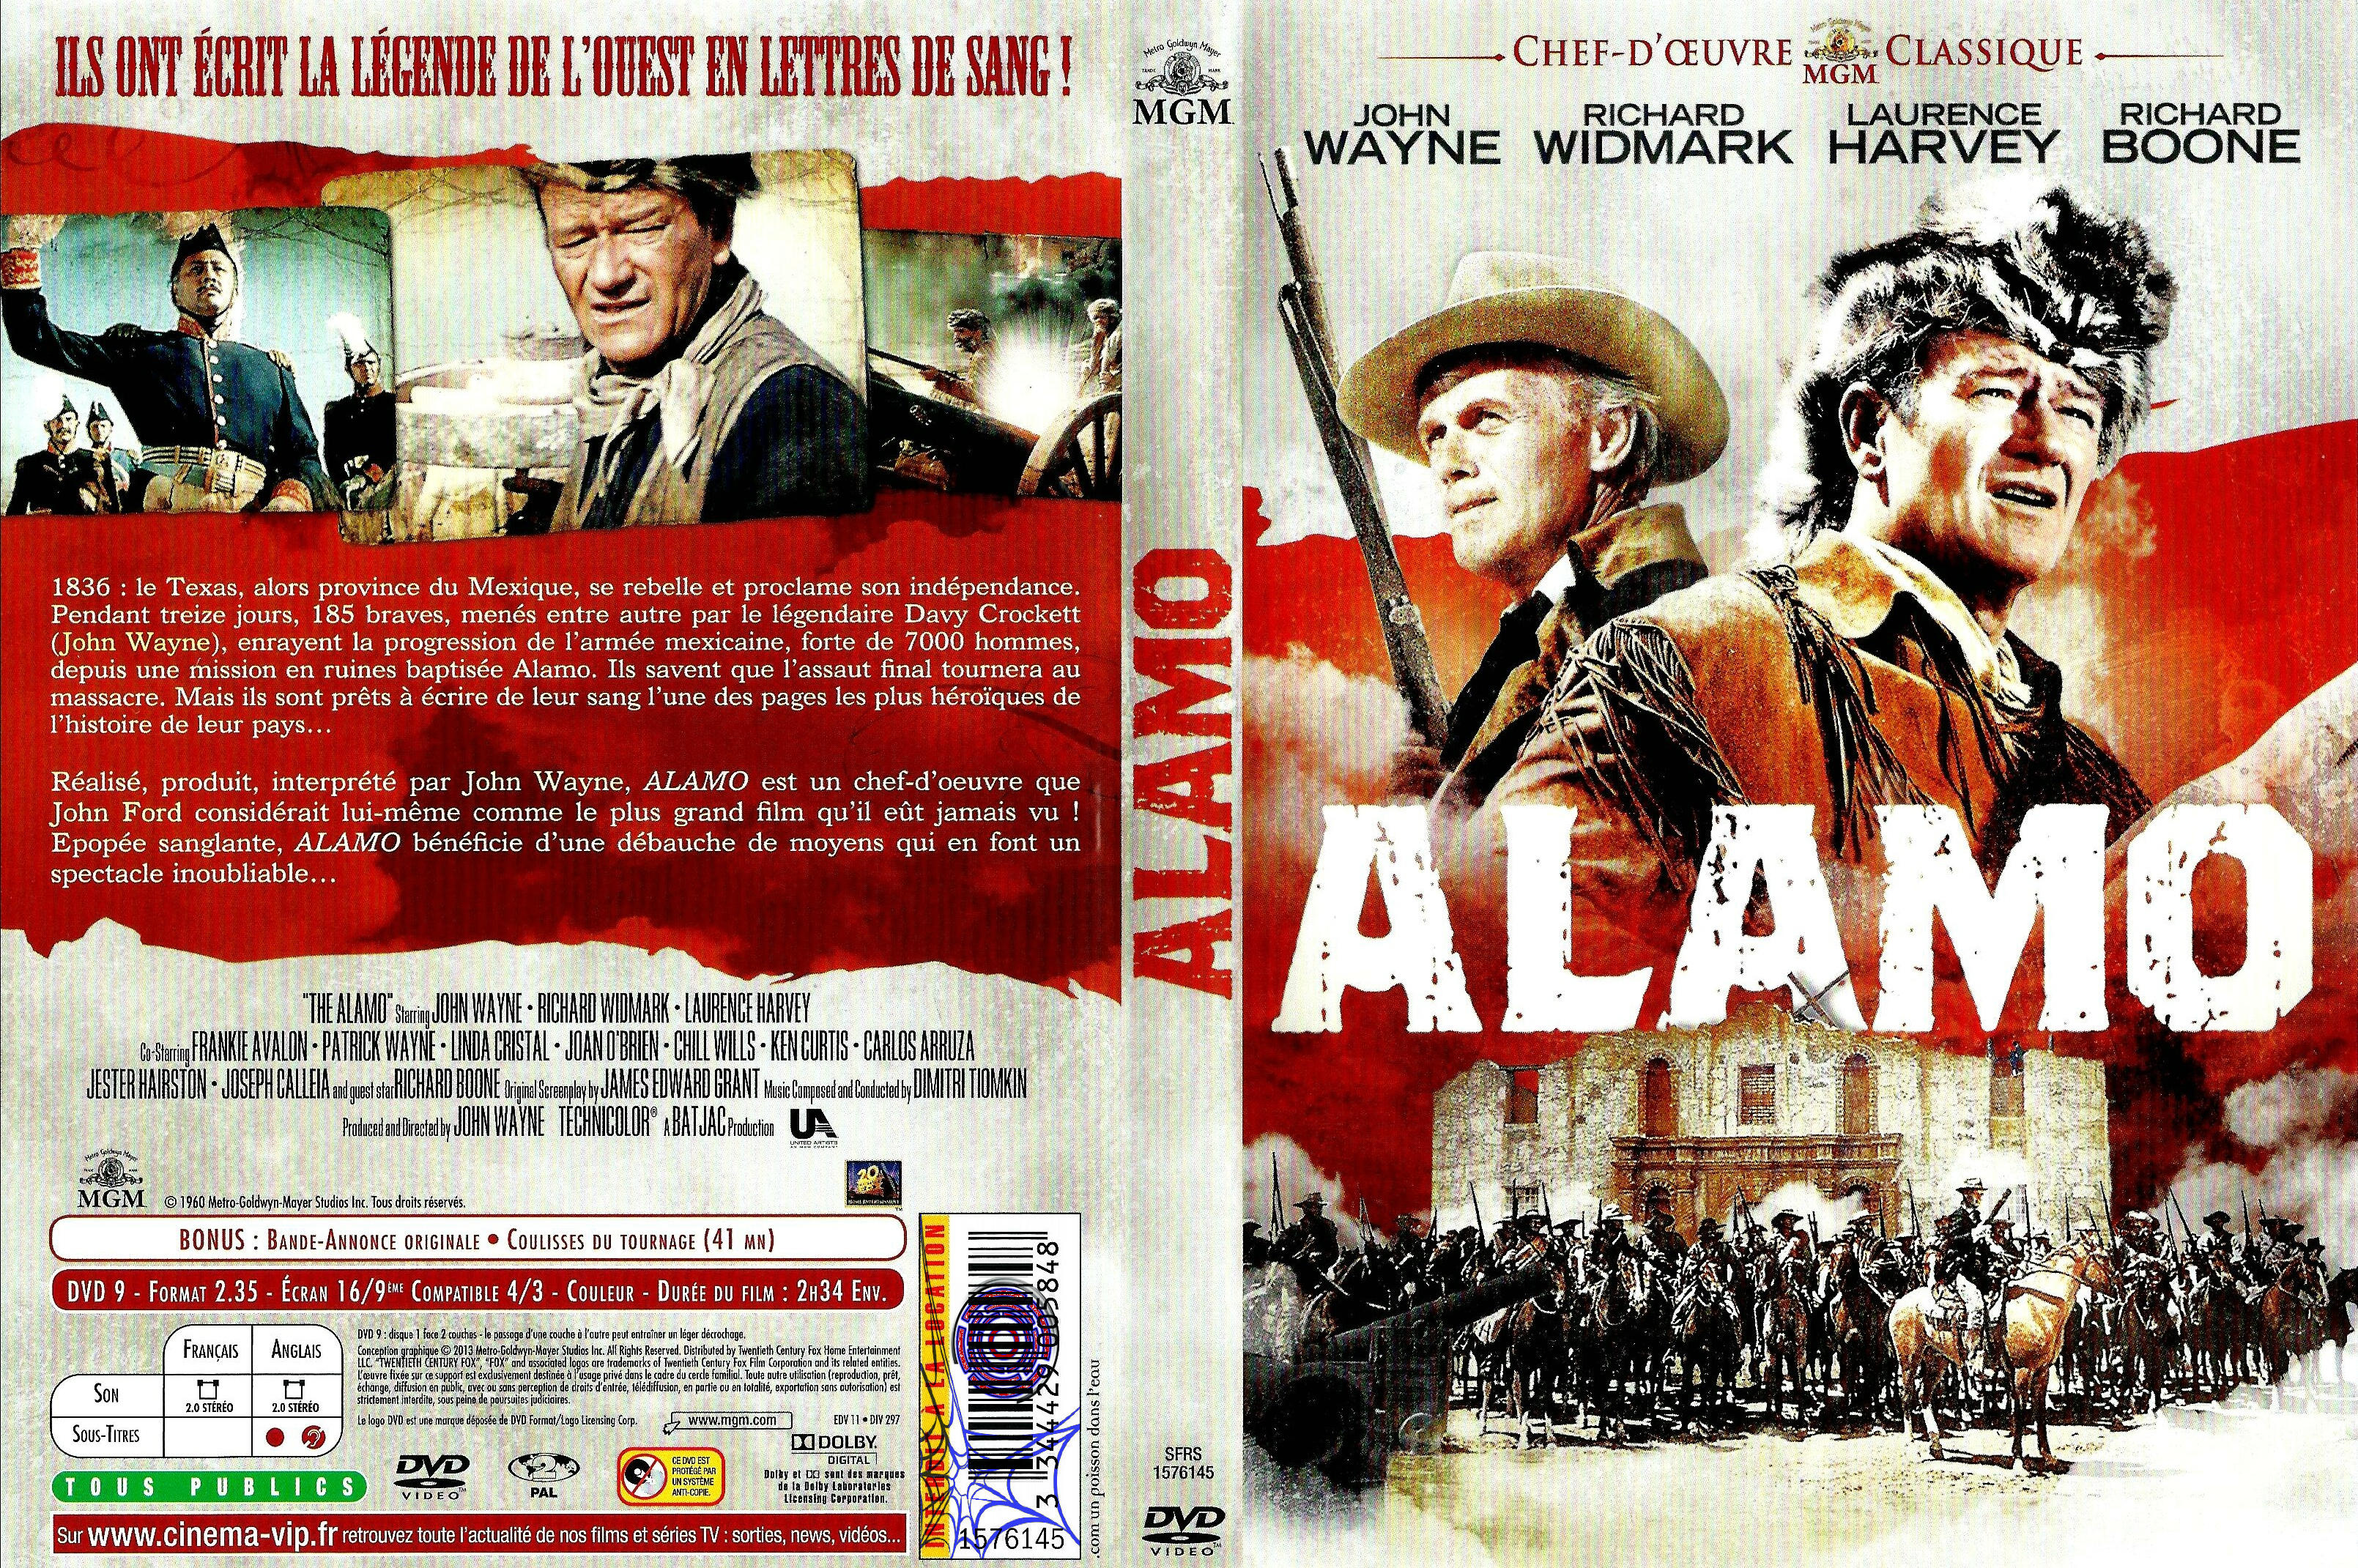 Jaquette DVD Alamo v6